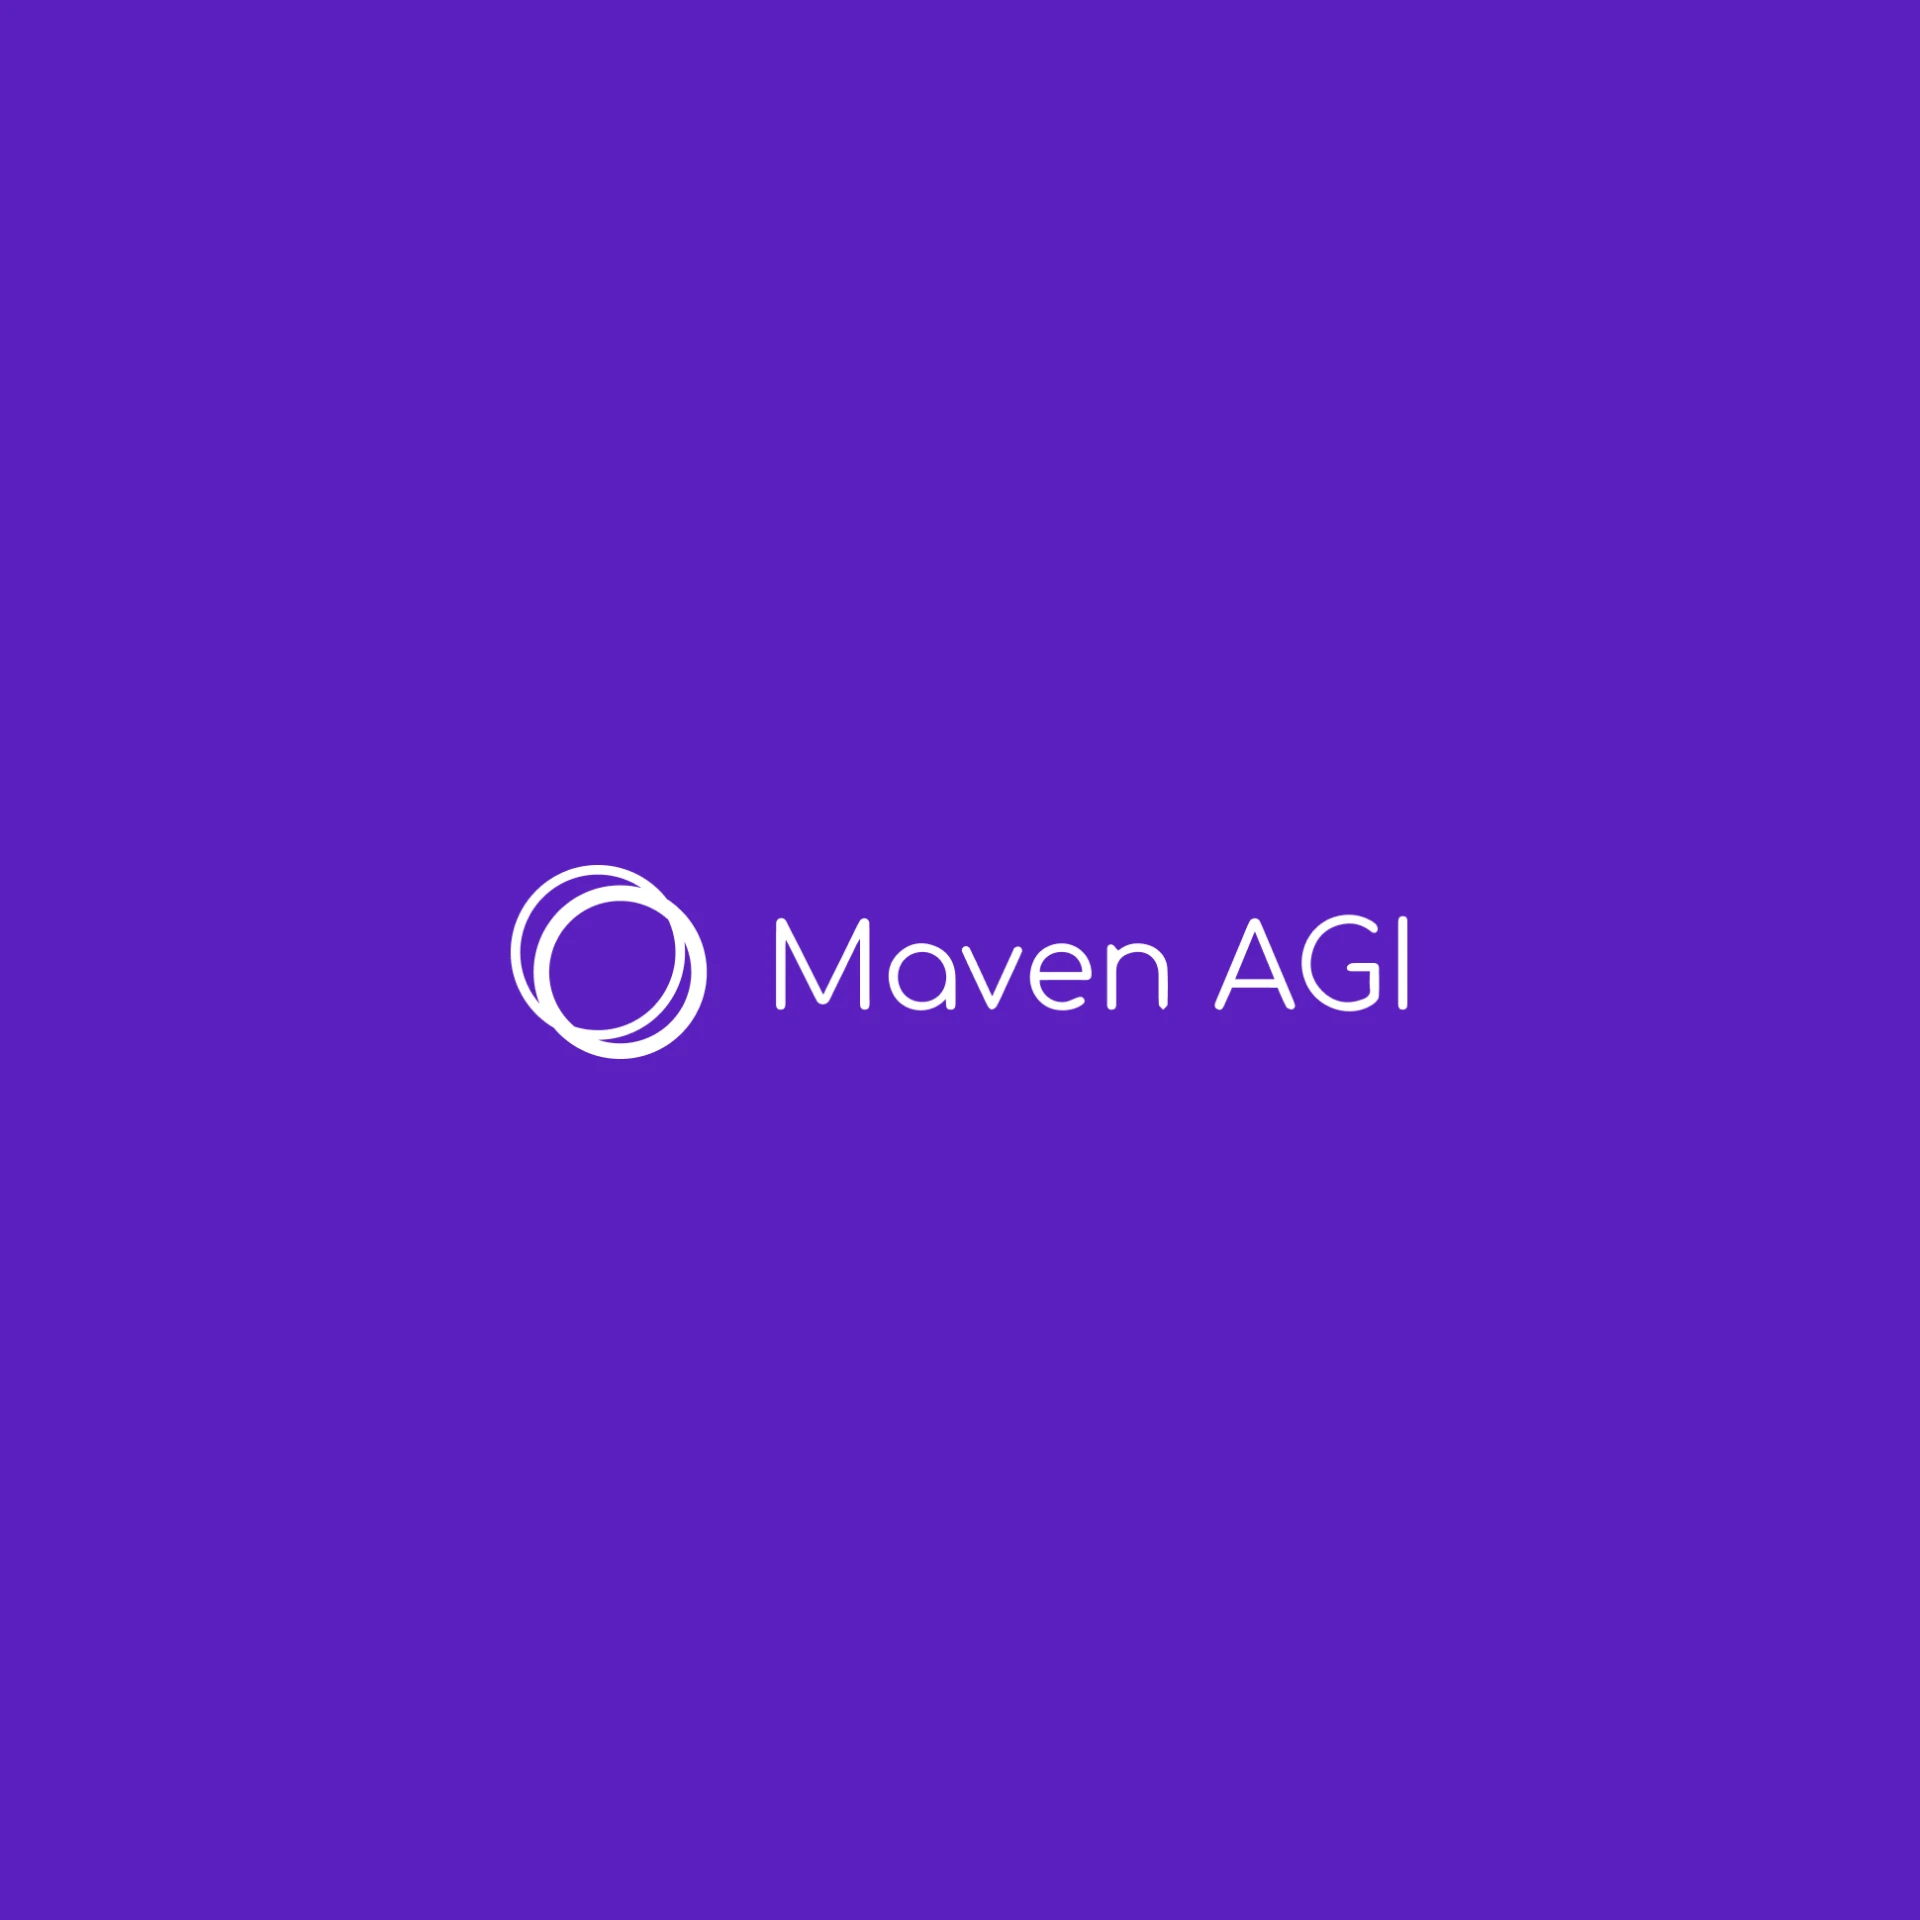 紫色背景上的白色MavenAGI标志。